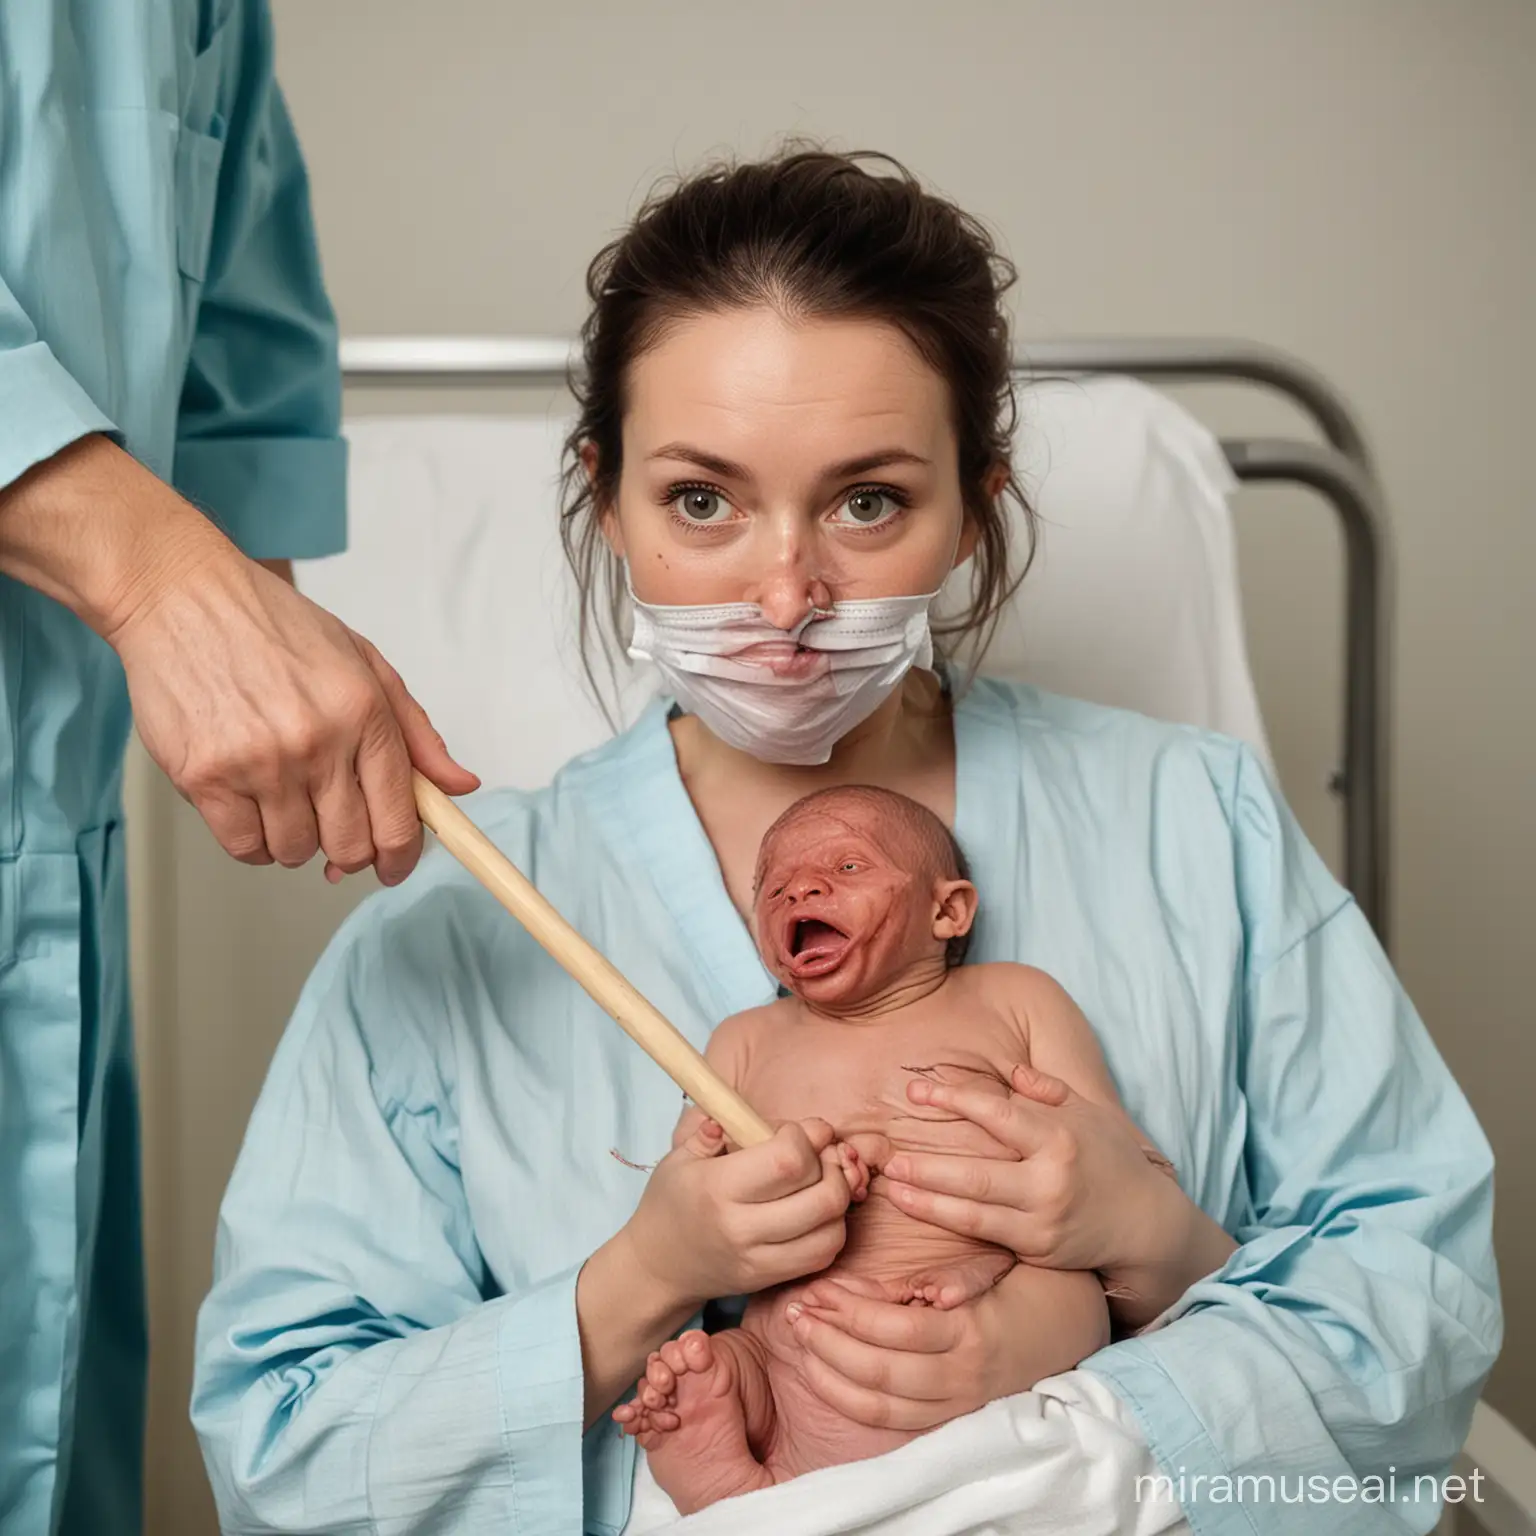 Na porodówce lekarz z założoną maseczką dotyka patykiem brzydkiego zdeformowanego noworodka. Noworodek z wyglądu przypomina rzadką srakę. 